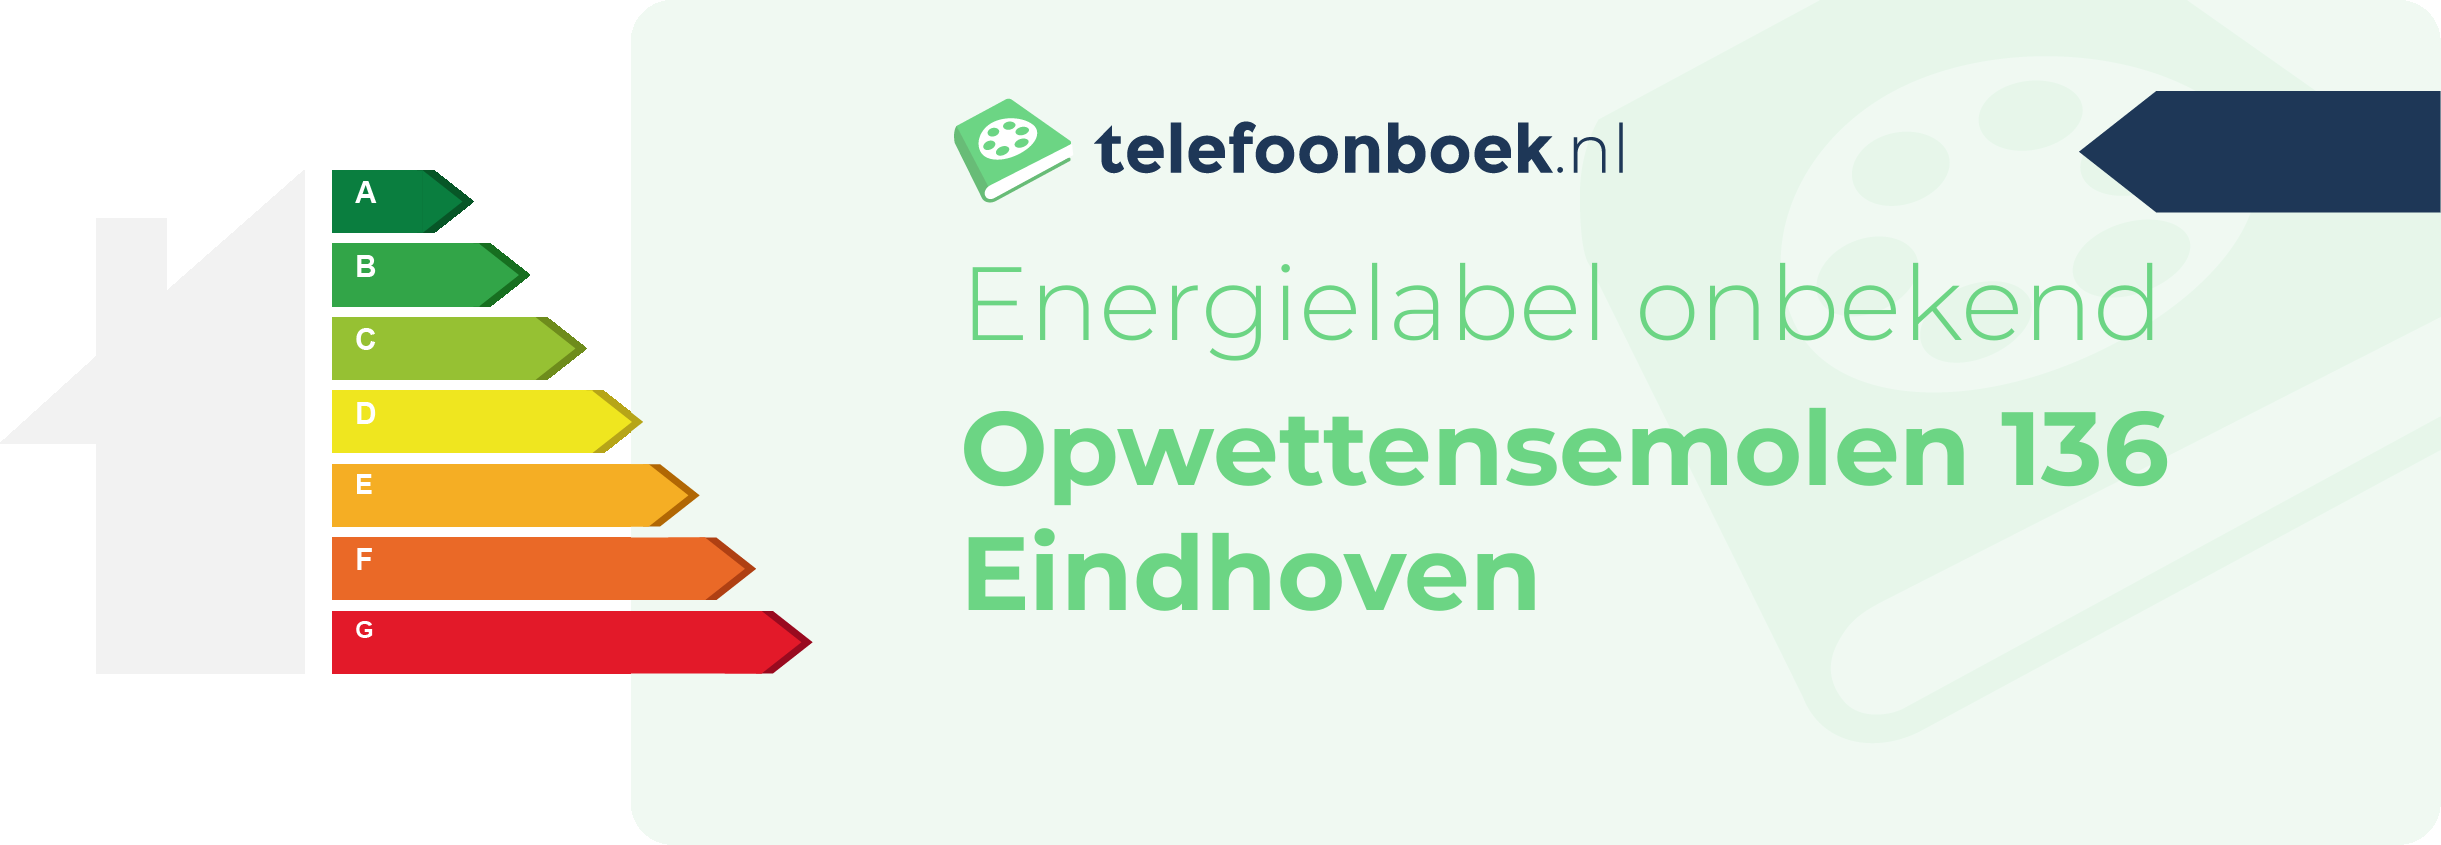 Energielabel Opwettensemolen 136 Eindhoven